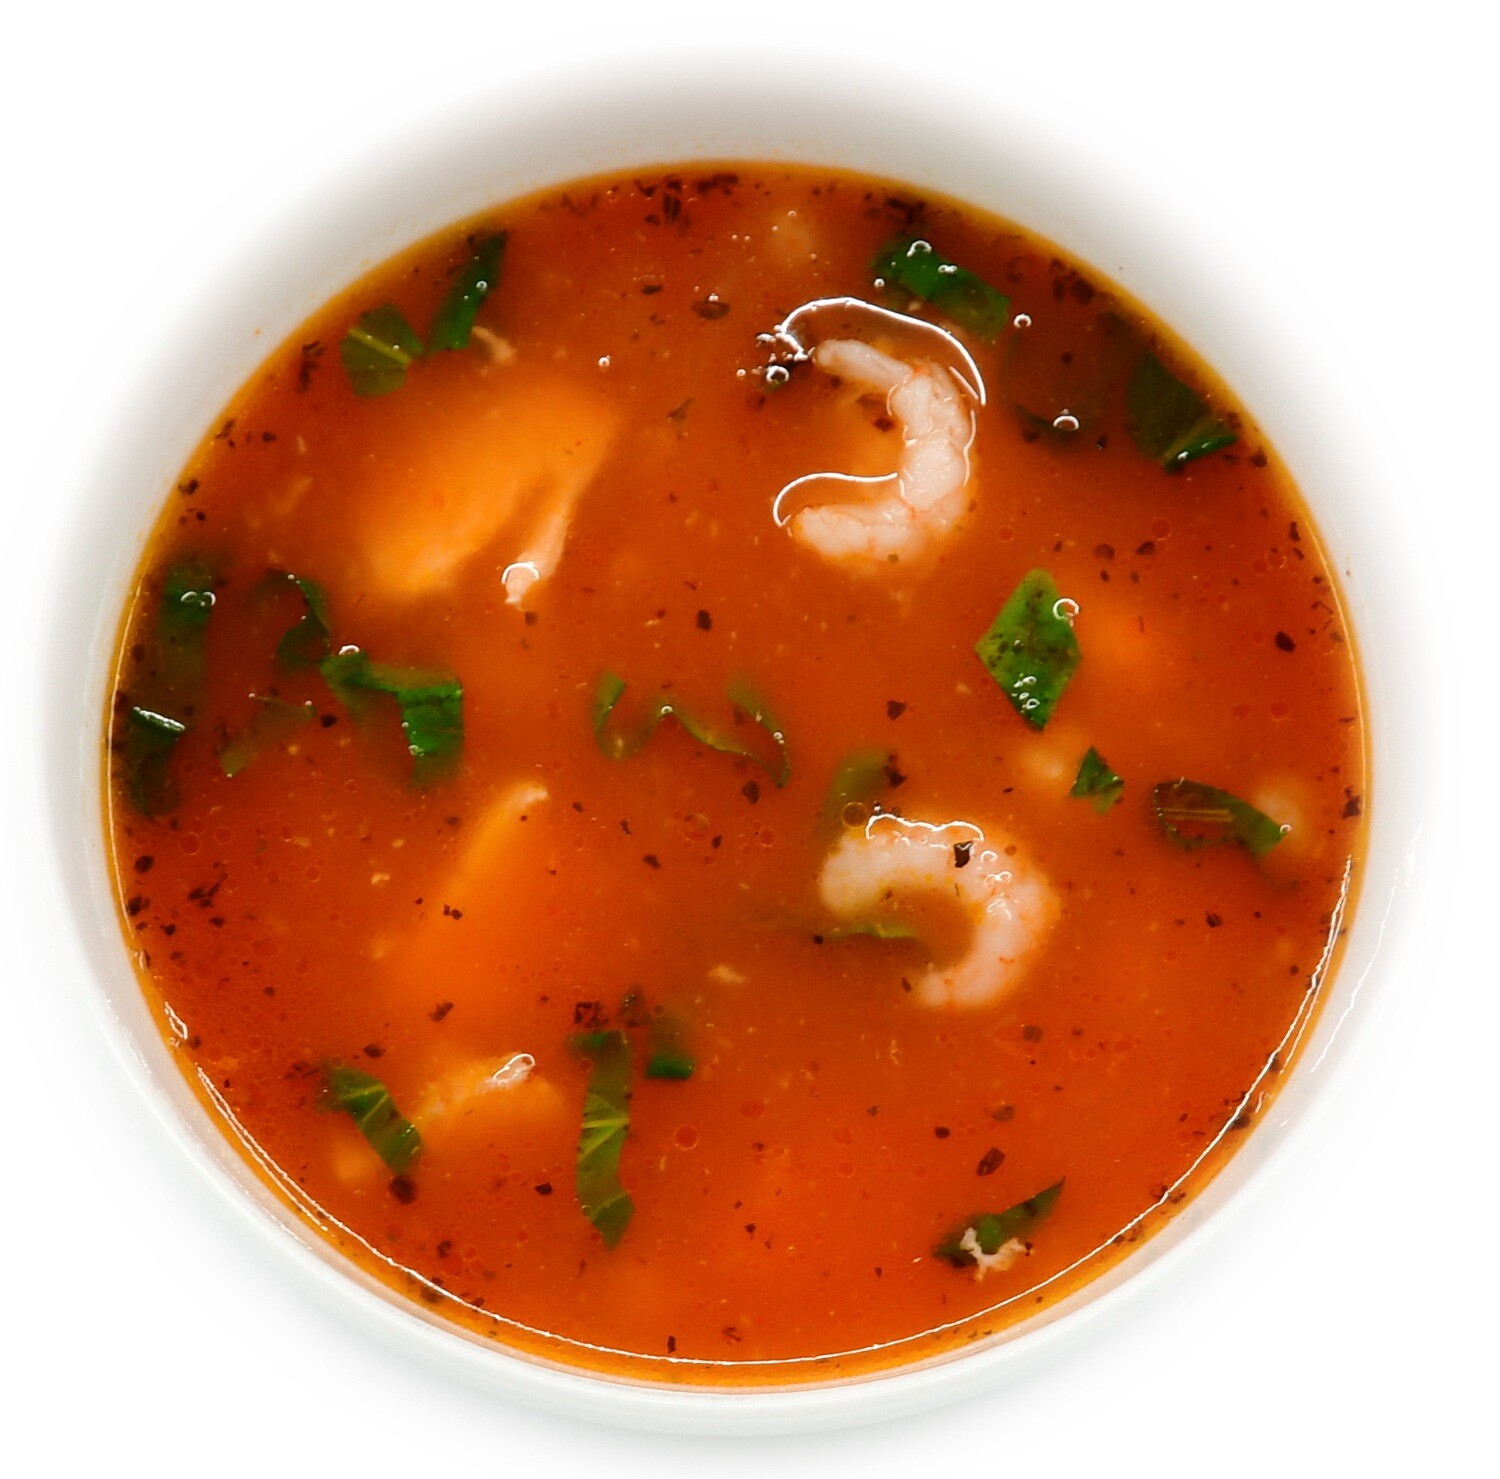 Salmon-shrimp soup with couscous